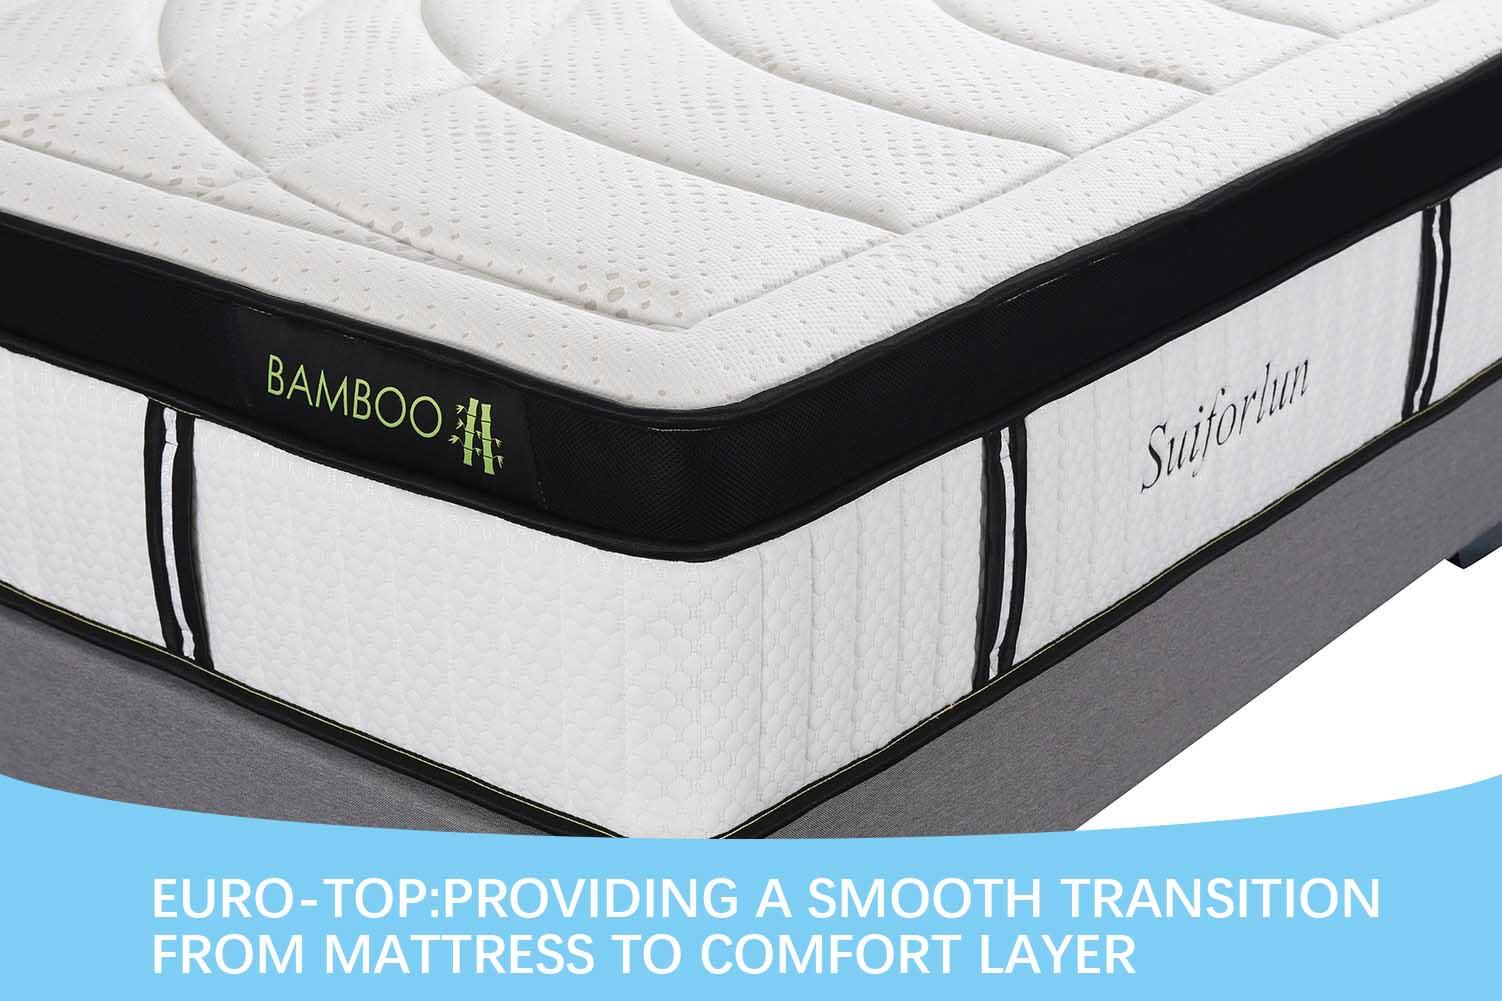 Suiforlun mattress Brand pillow mattress pocket hybrid mattress manufacture